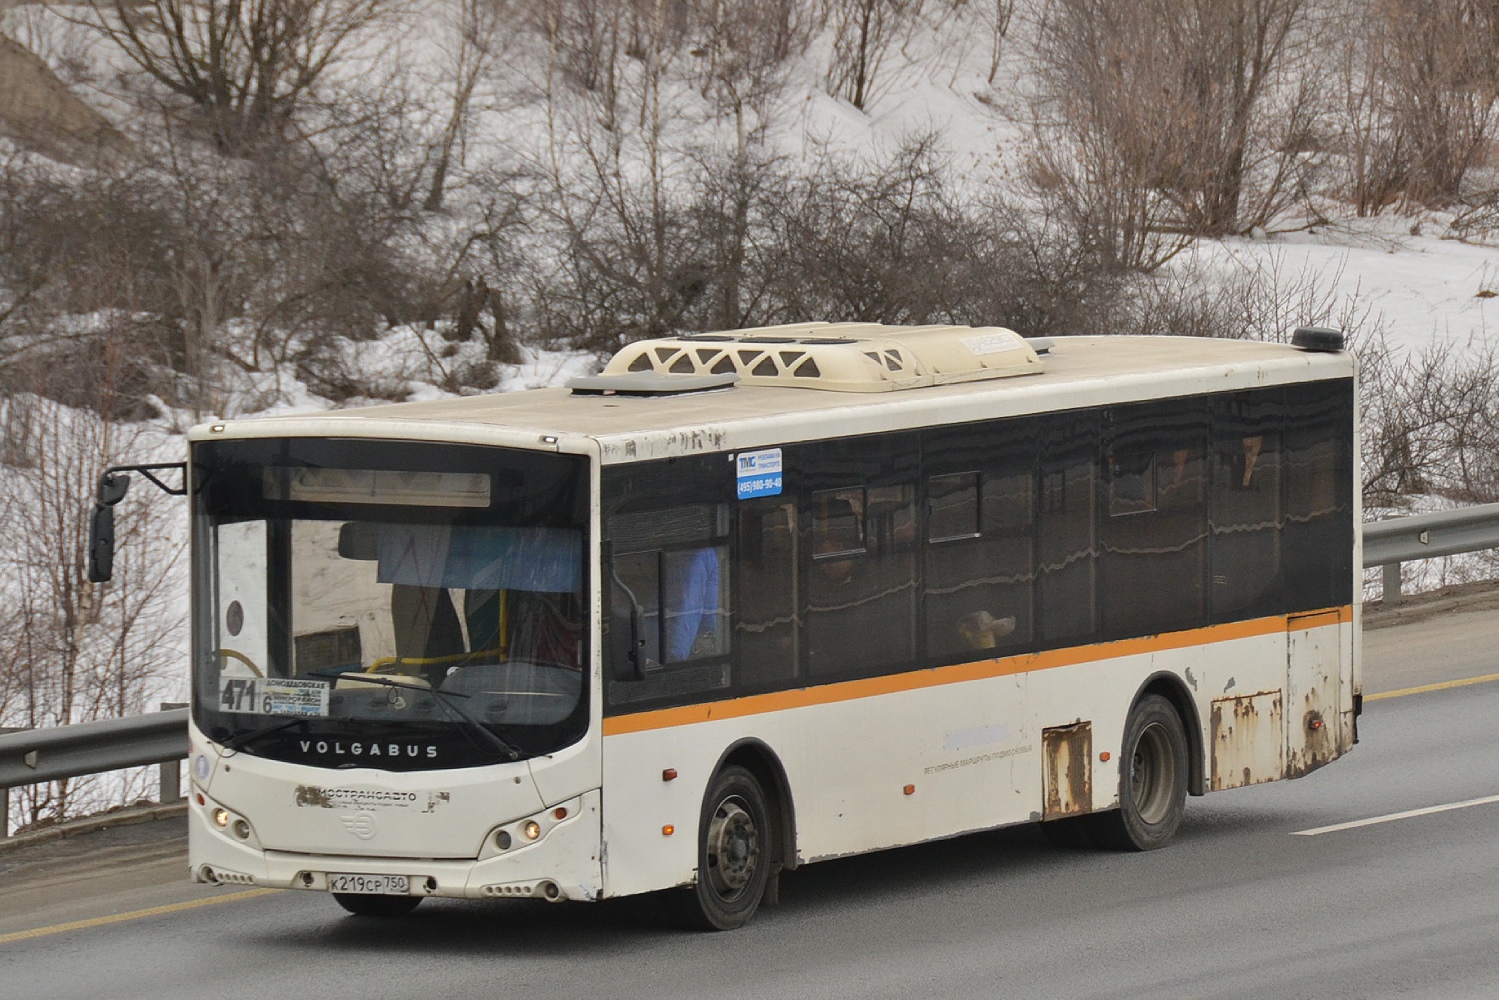 Maskavas reģionā, Volgabus-5270.0H № К 219 СР 750